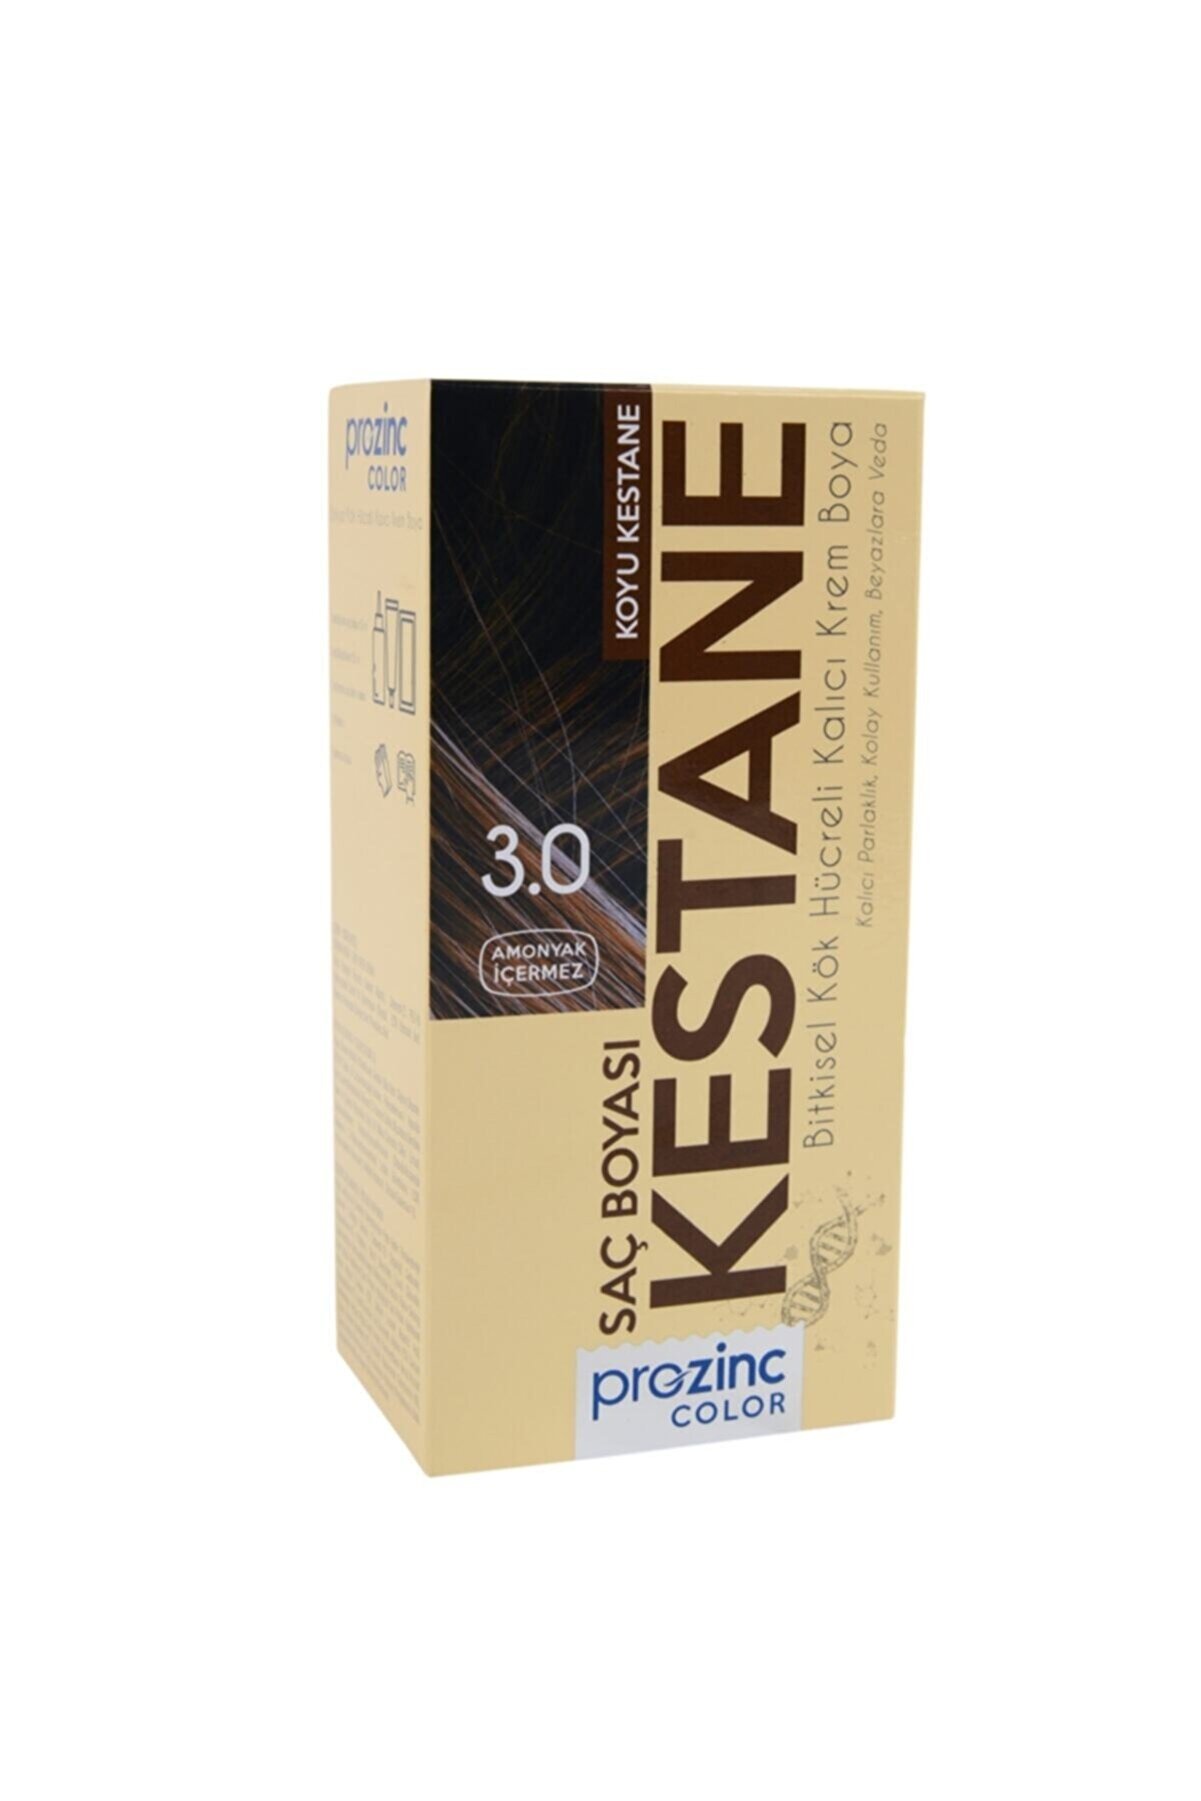 Prozinc Color 3.0 Kestane - Amonyaksız Bitkisel Kalıcı Saç Boyası